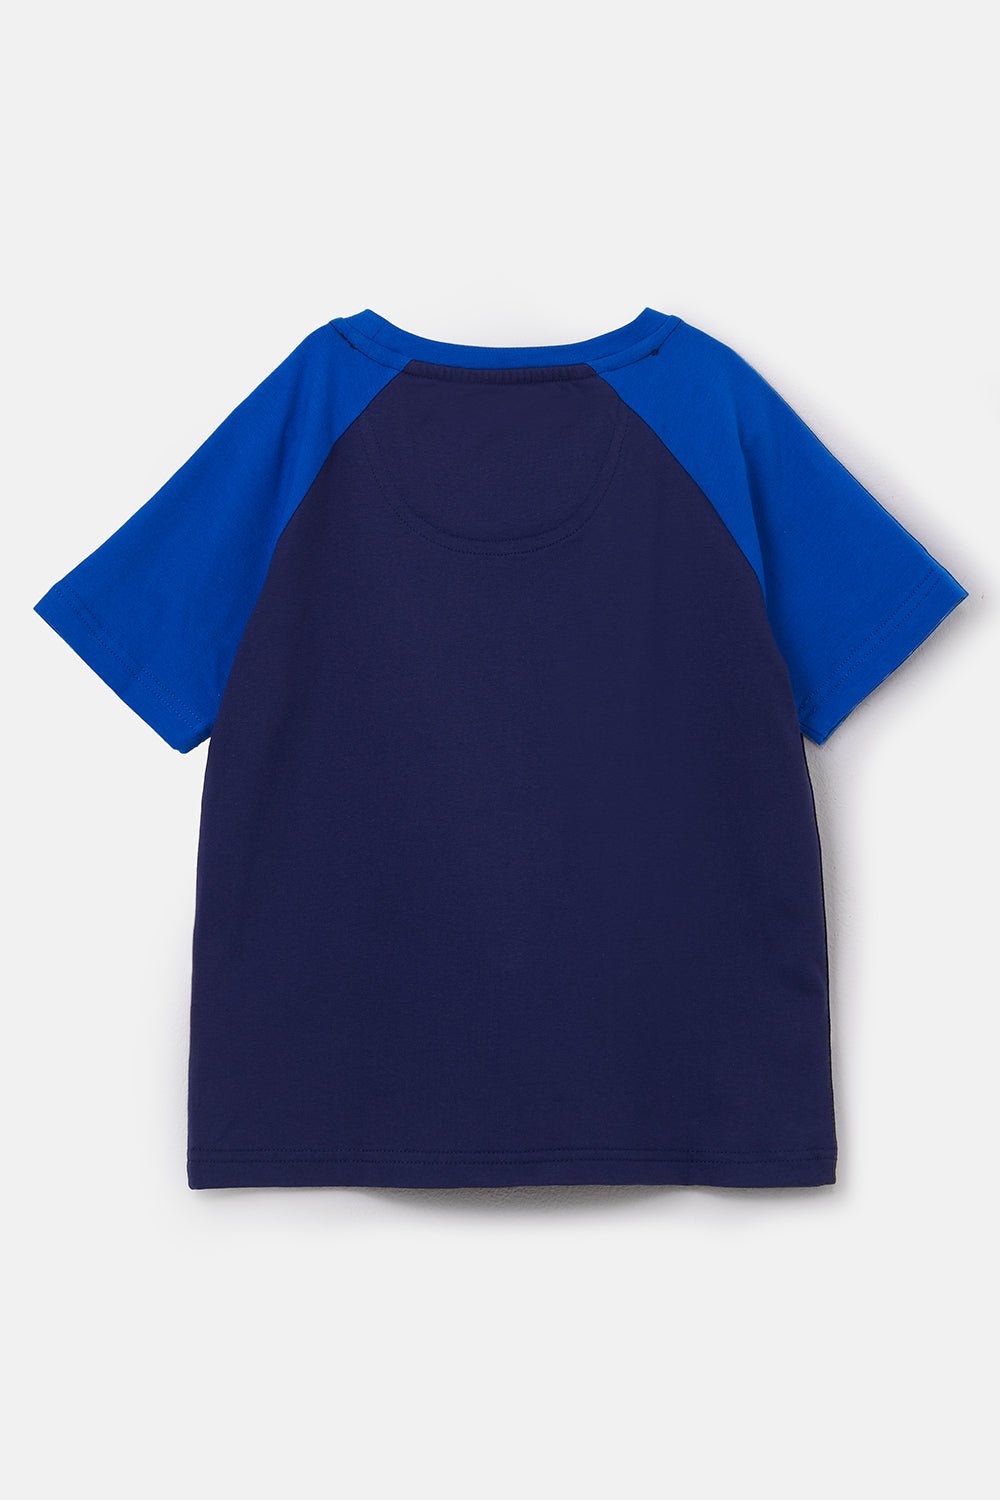 Mason Tee Shirt - Blue Front Loader